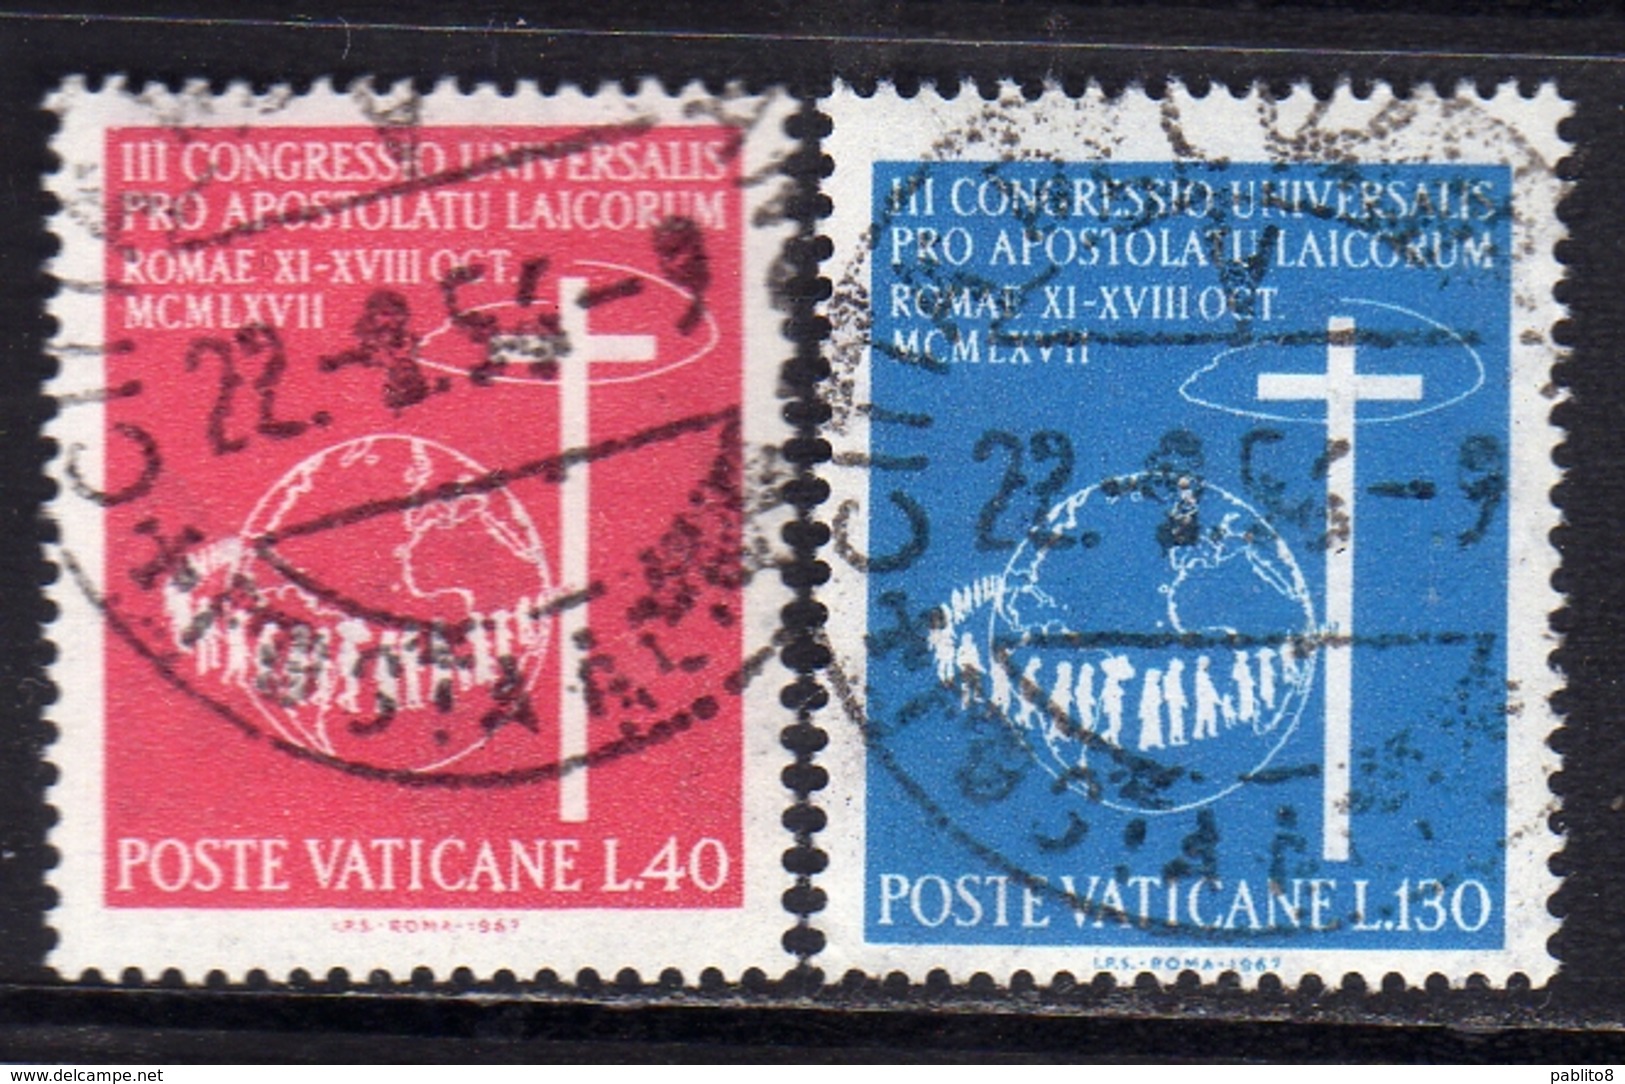 CITTÀ DEL VATICANO VATICAN VATIKAN 1967 APOSTOLATO DEI LAICI APOSTOLATE OF THE LAITY SERIE COMPLETA SET USATA USED - Used Stamps